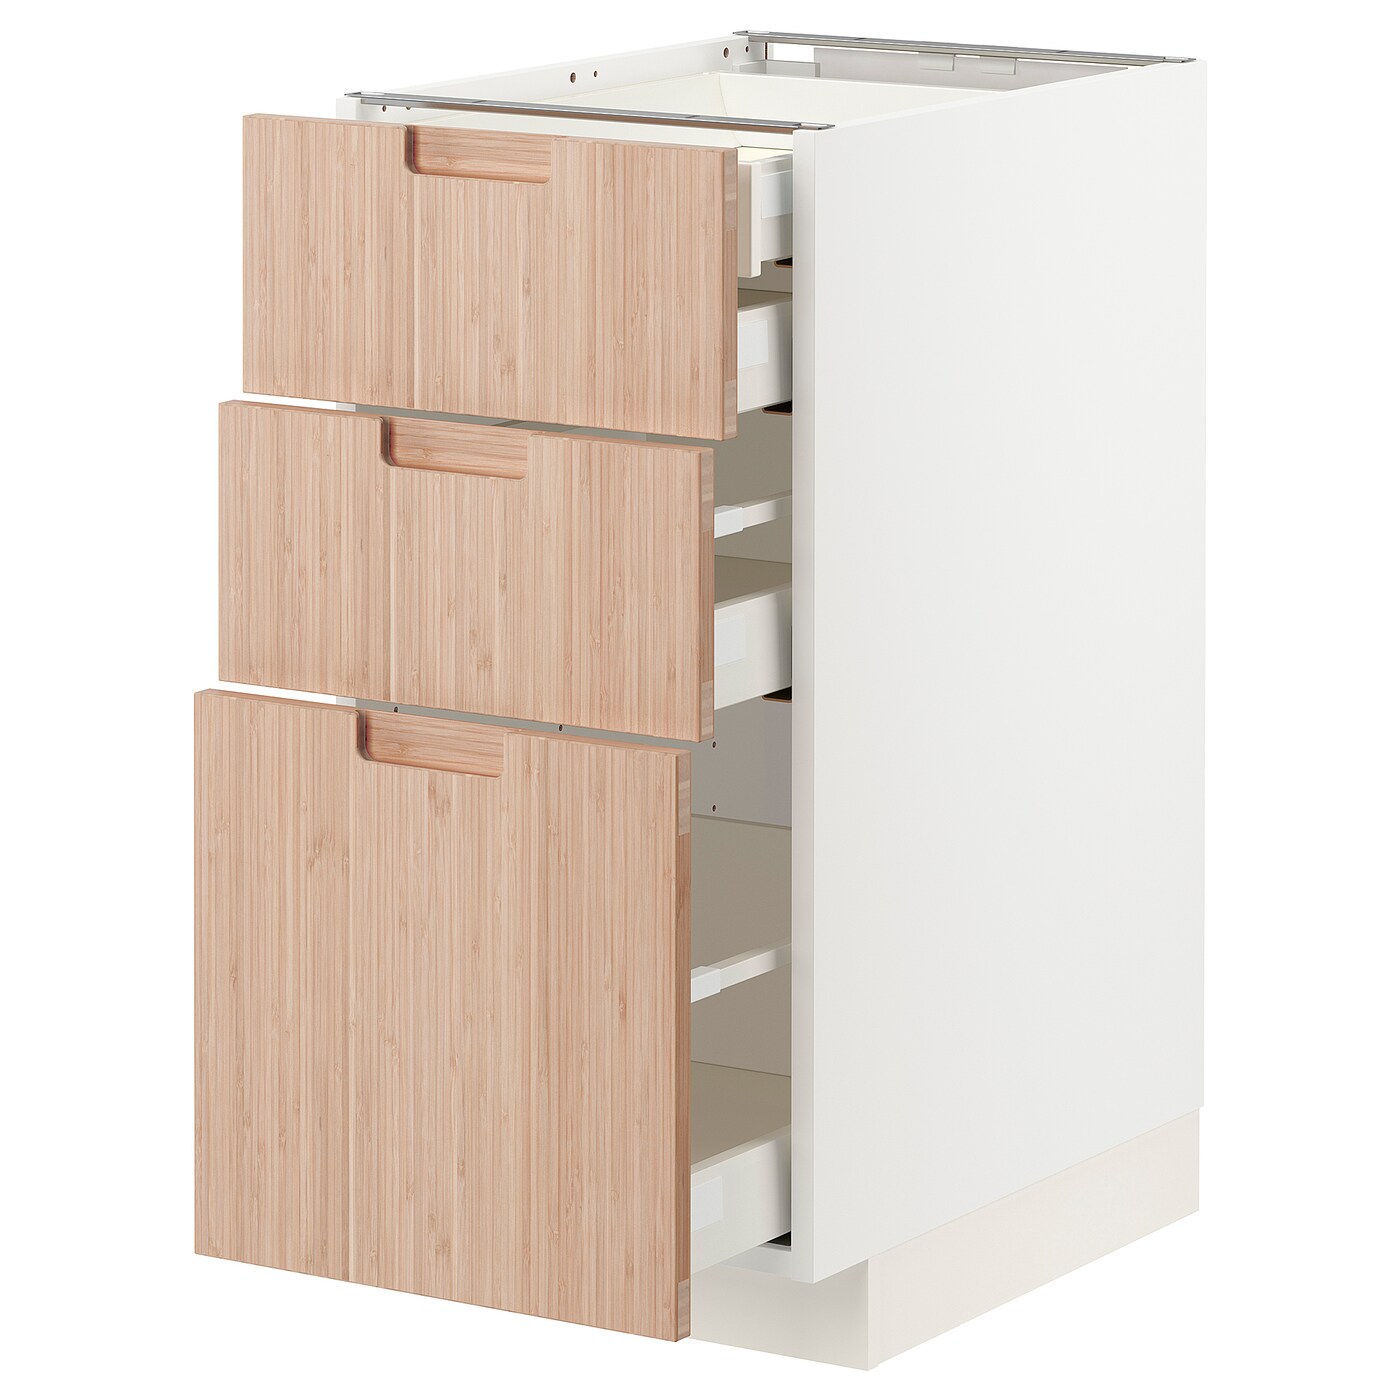 Напольный шкаф  - IKEA METOD MAXIMERA, 88x61,6x40см, белый/светло-коричневый, МЕТОД МАКСИМЕРА ИКЕА